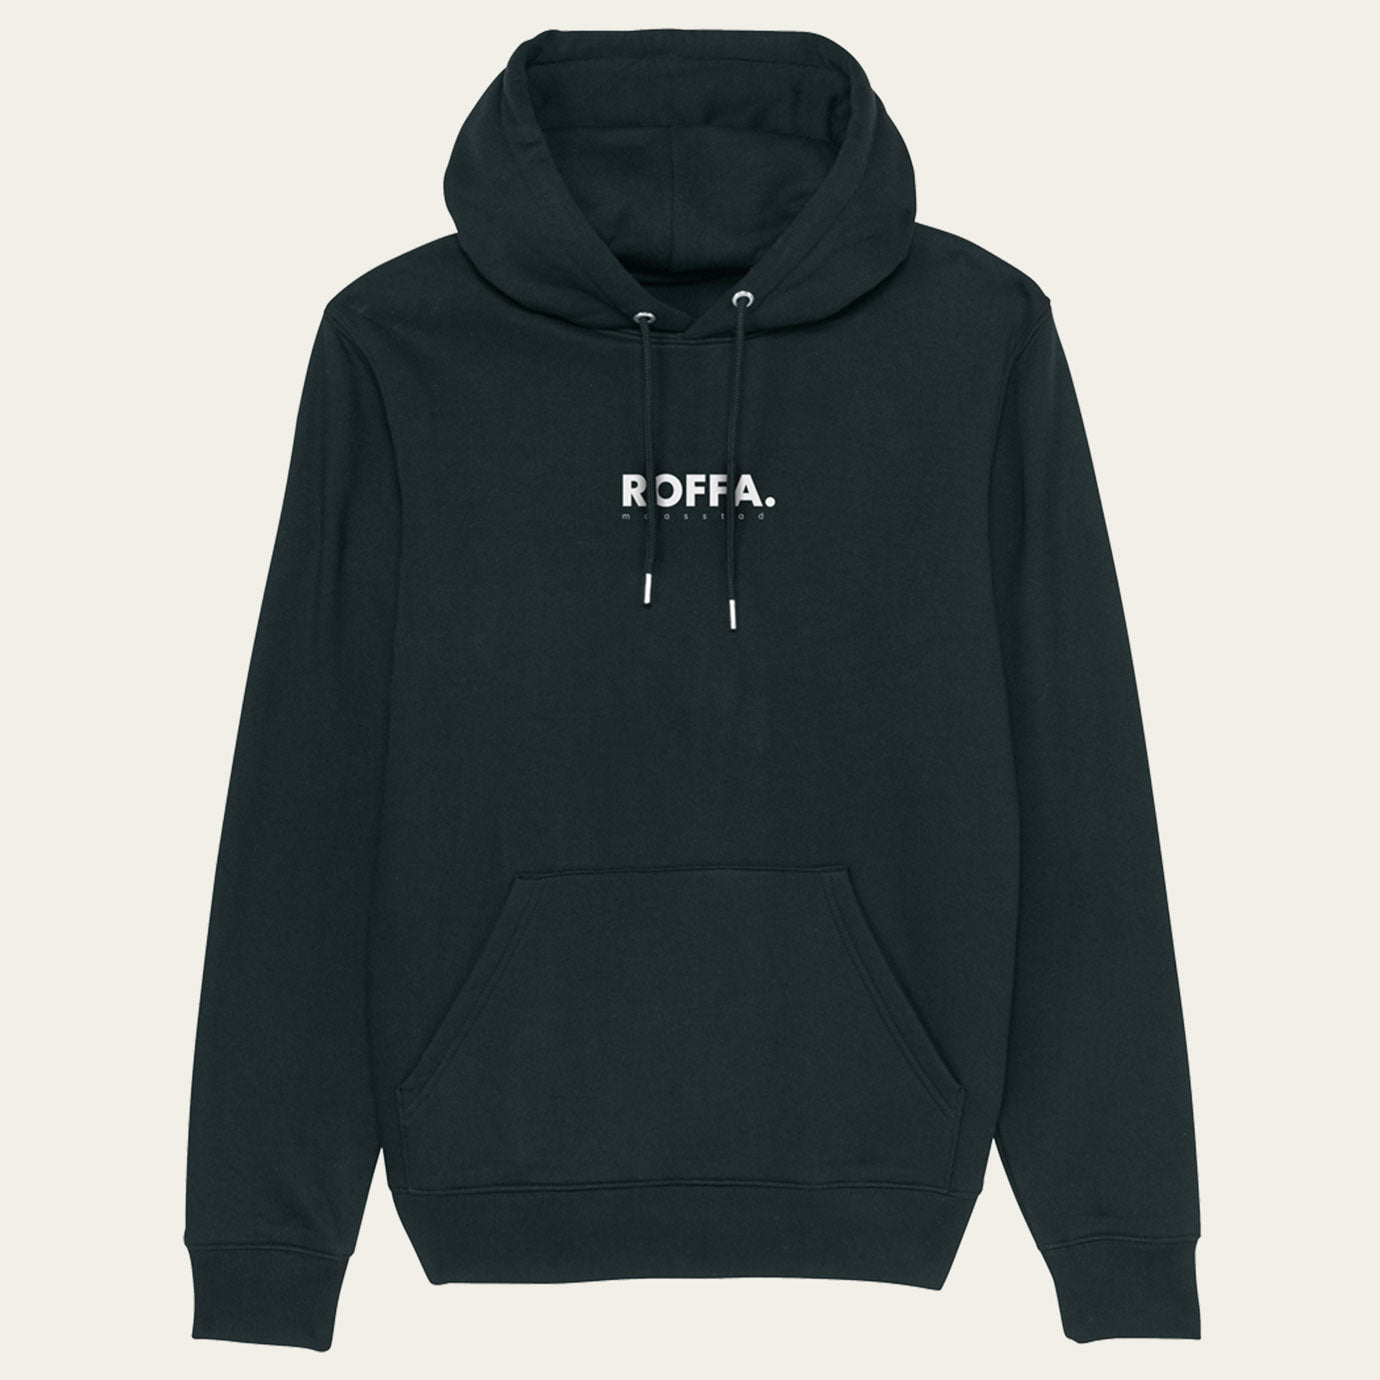 Zwarte hoodie met capuchon en groot ROFFA. rotterdam logo